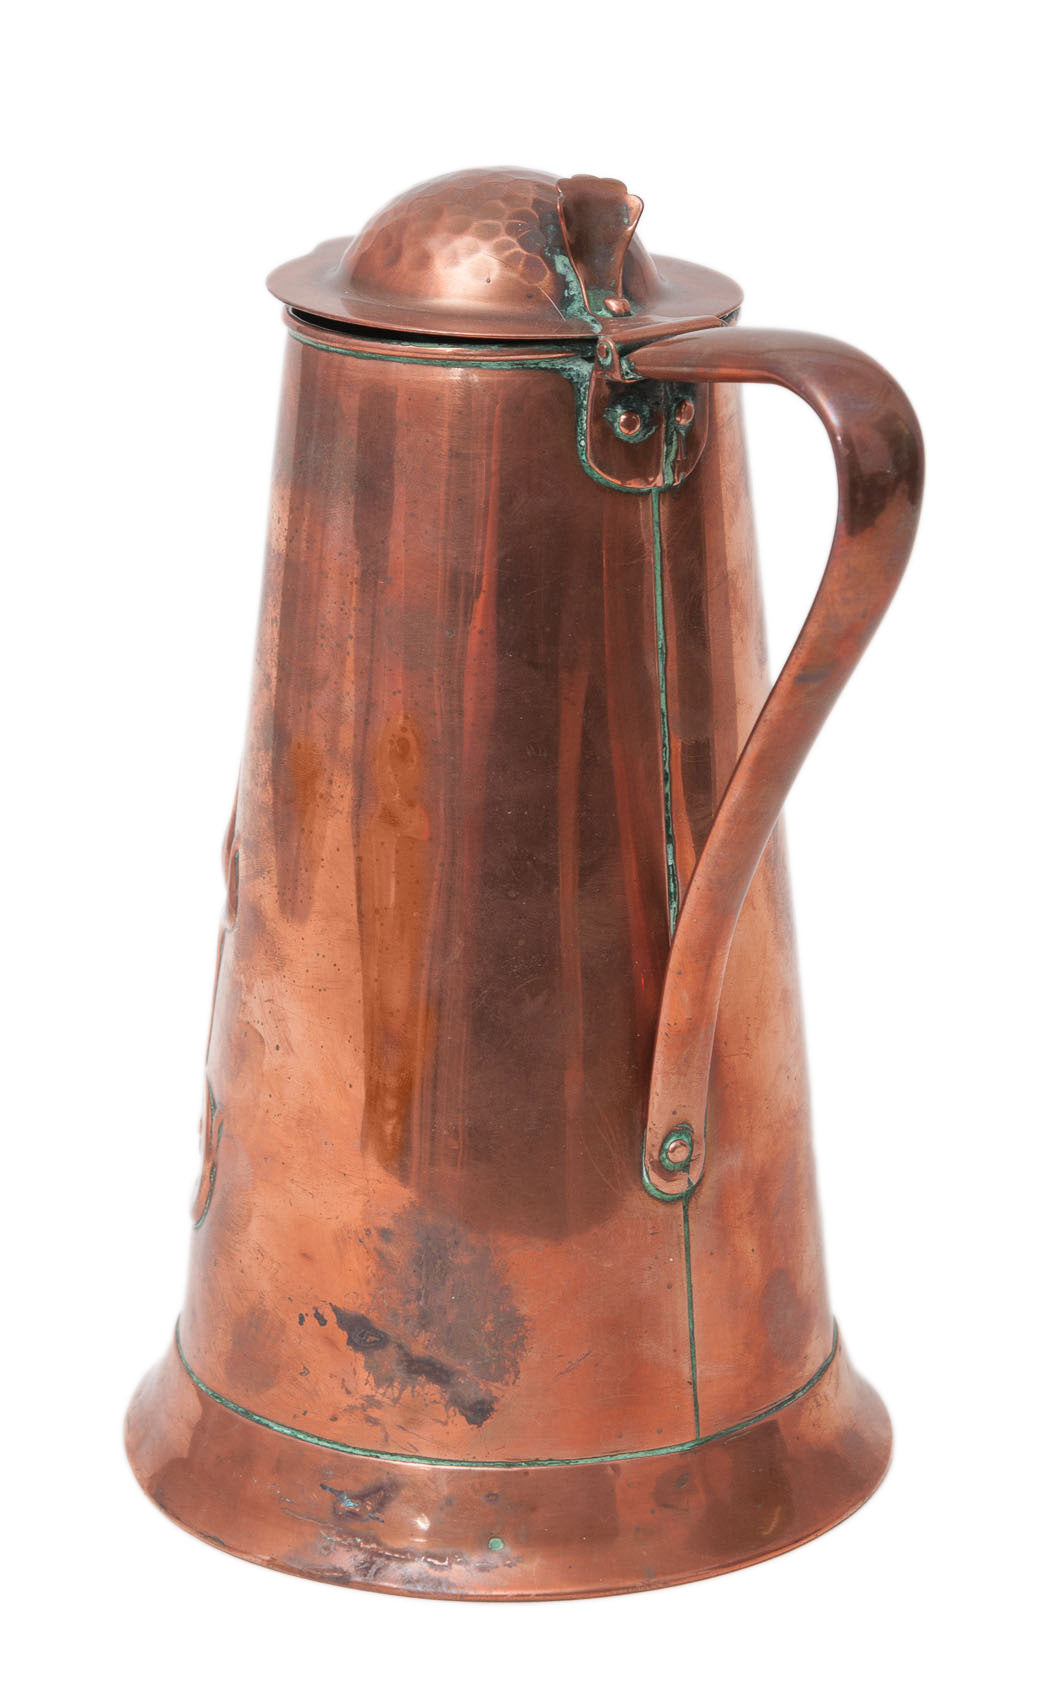 Antique Joseph Sankey Art Nouveau Copper Lidded Large Water Jug c1905 (Code 0121)